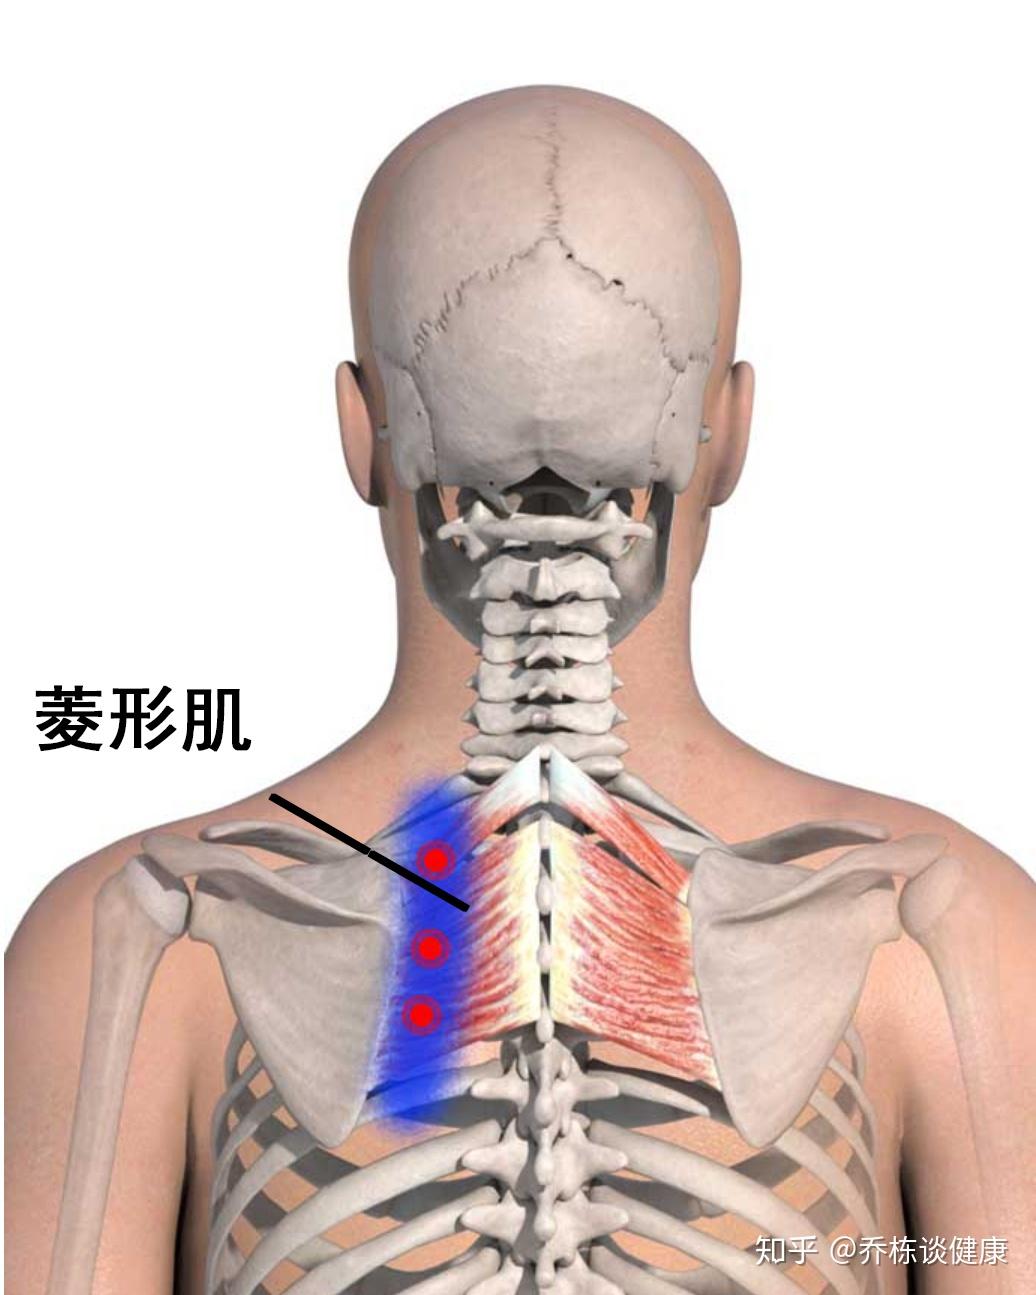 颈肌结构图,肩颈结构图 - 伤感说说吧